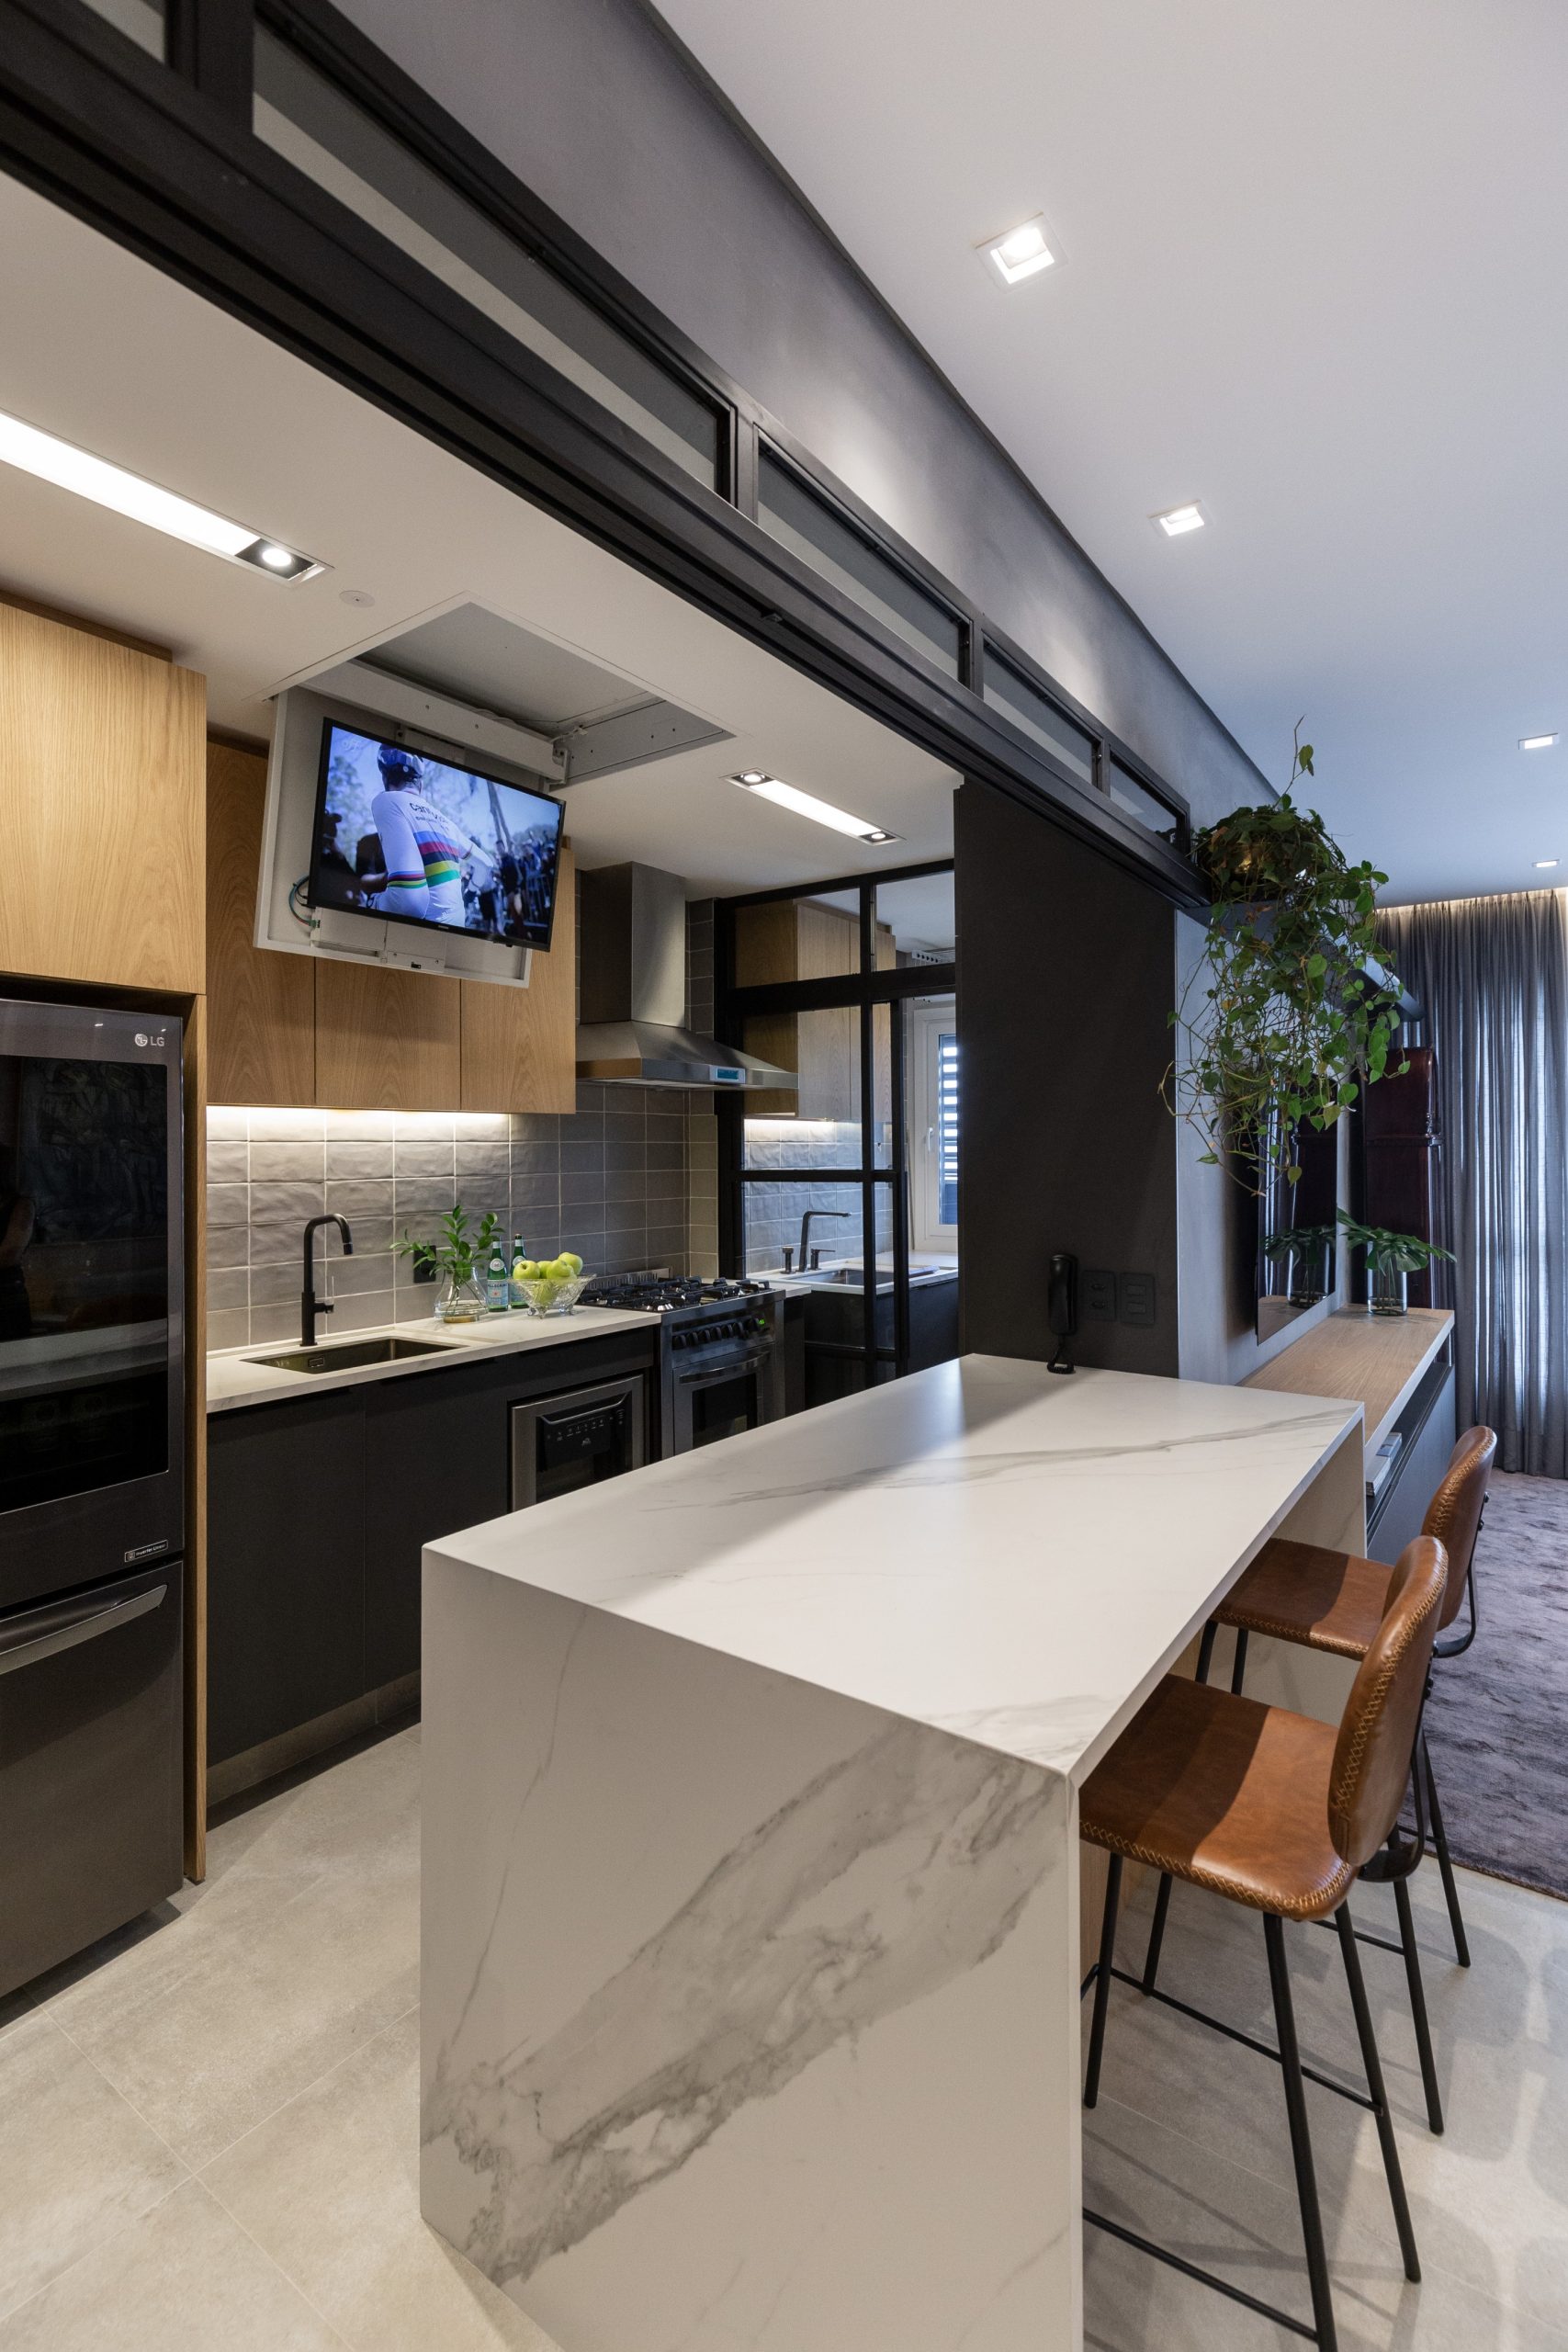 Een moderne keuken, ontworpen door 6mm Arquitetura, waar de TV aan het plafond is gemonteerd, een eenvoudig ingeklapt en verborgen kan worden.